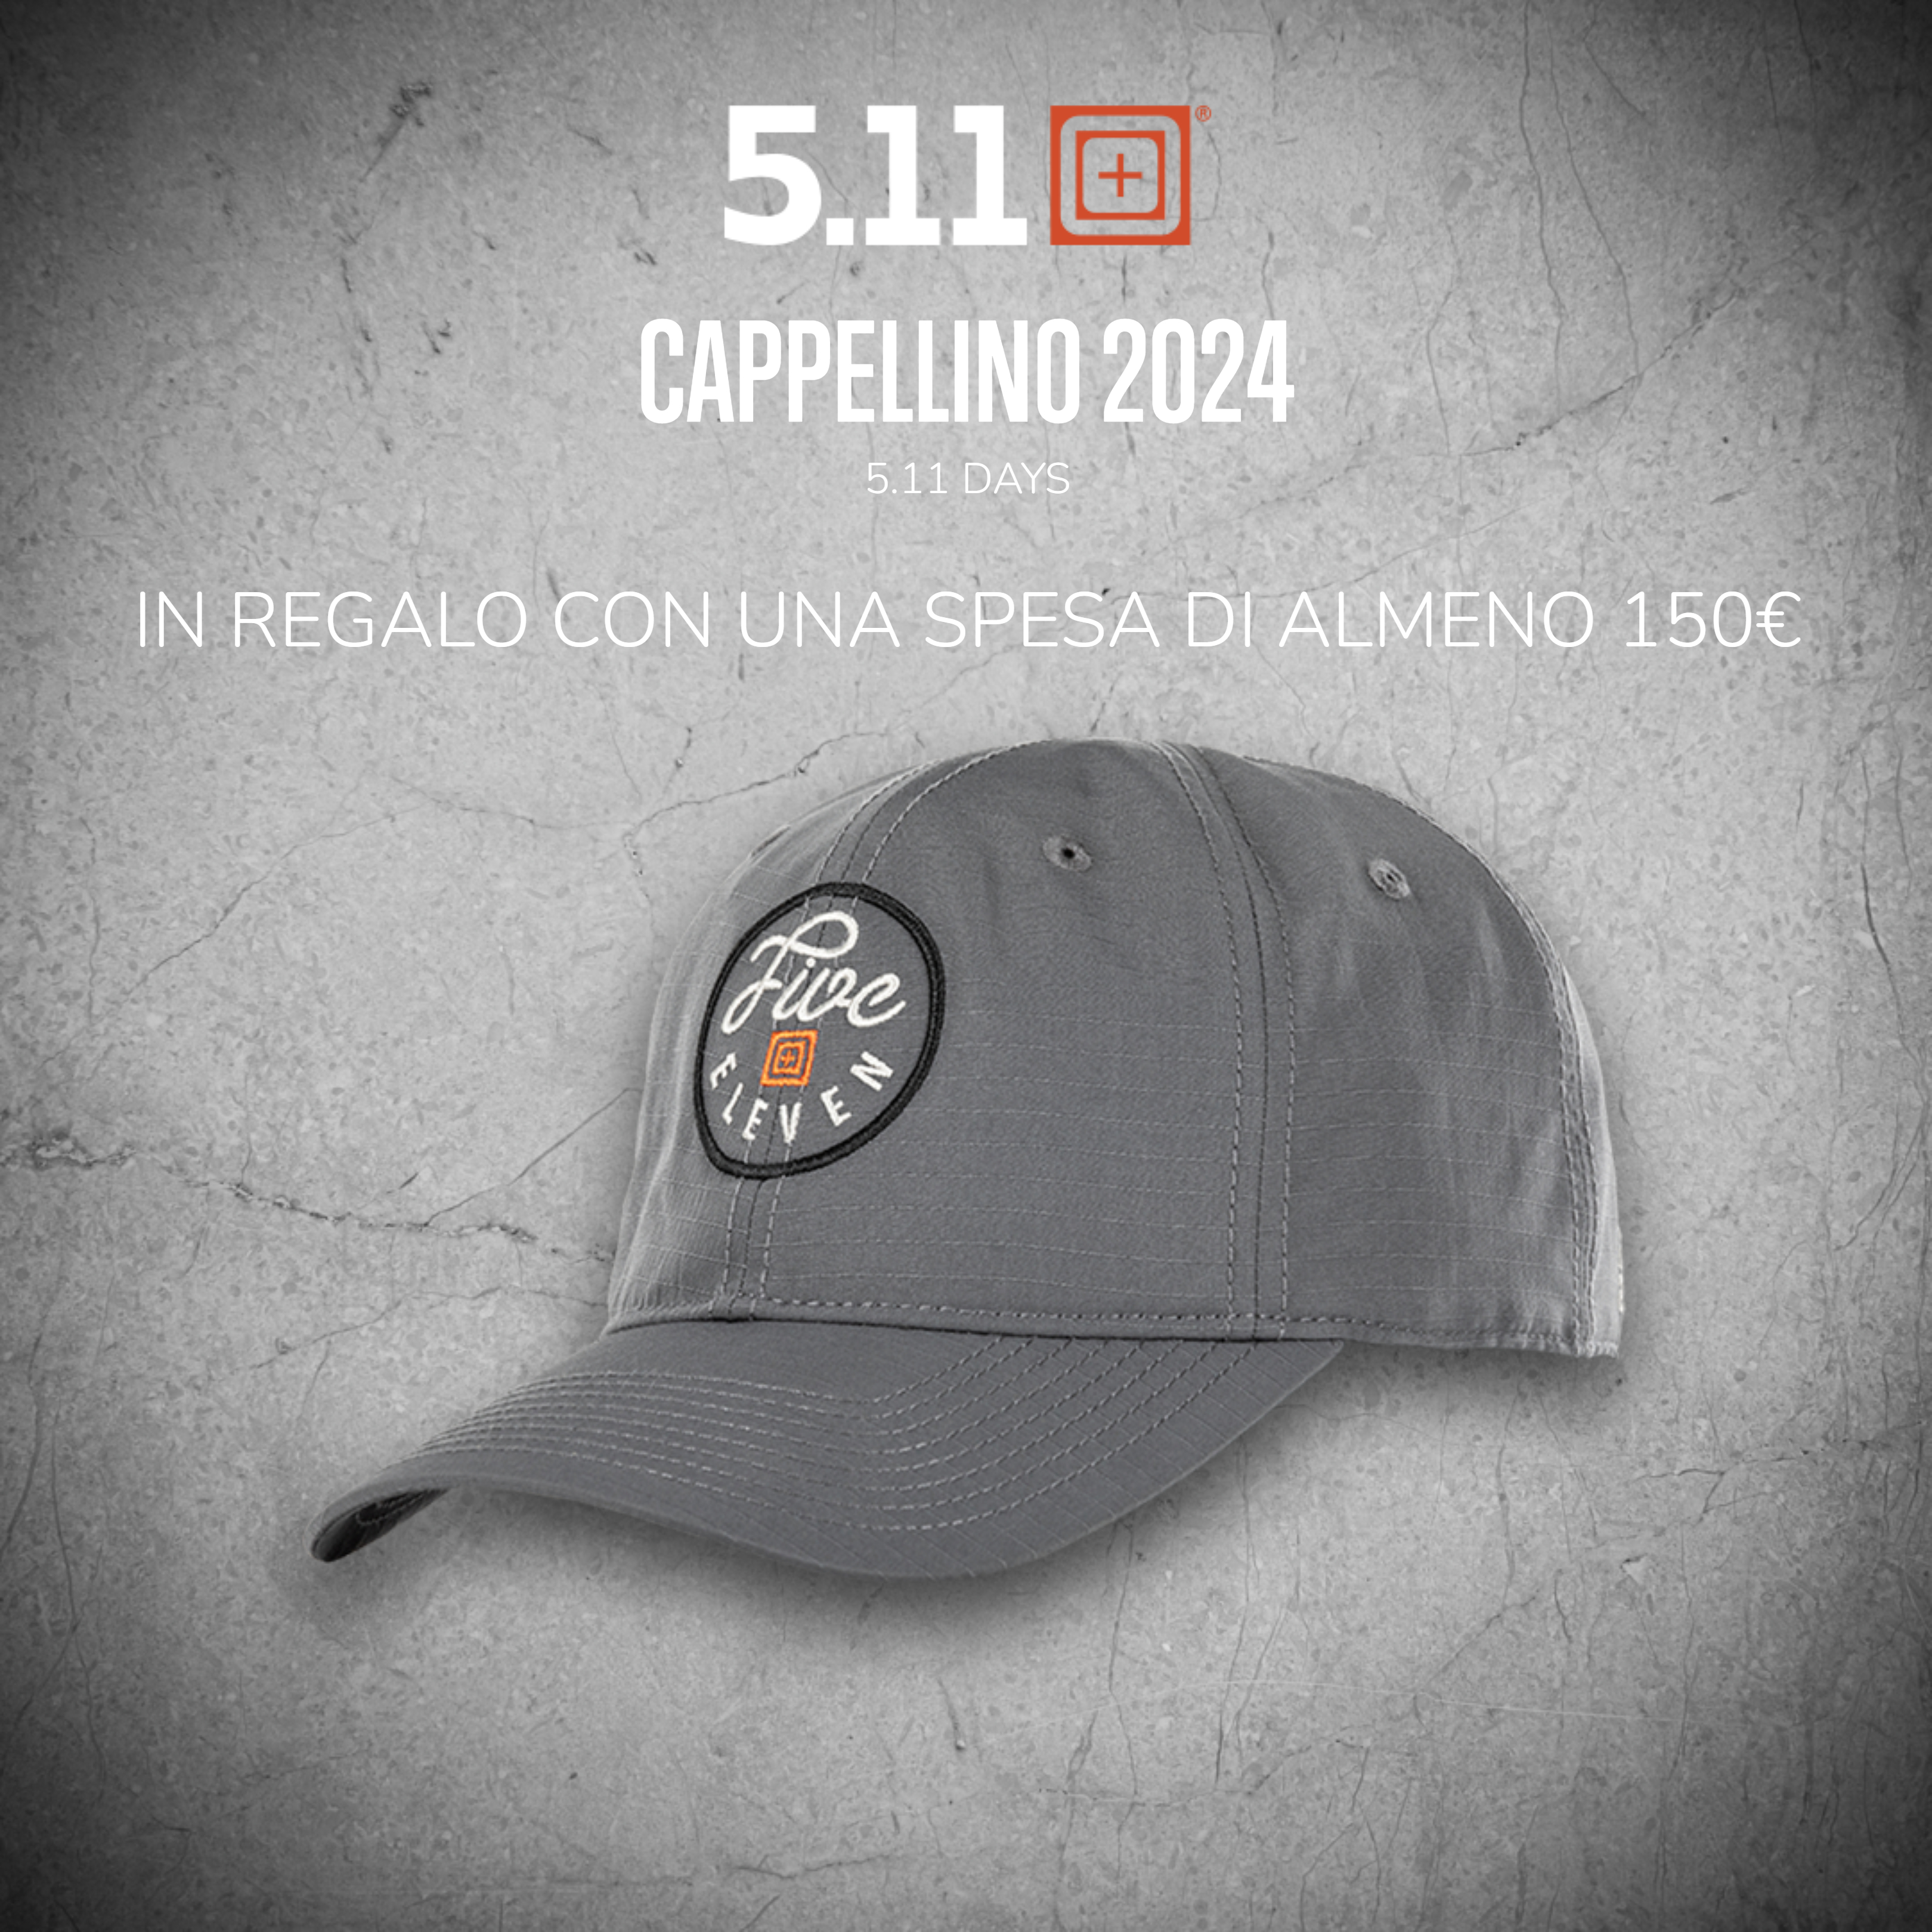 CAPELLINO 5.11 2024